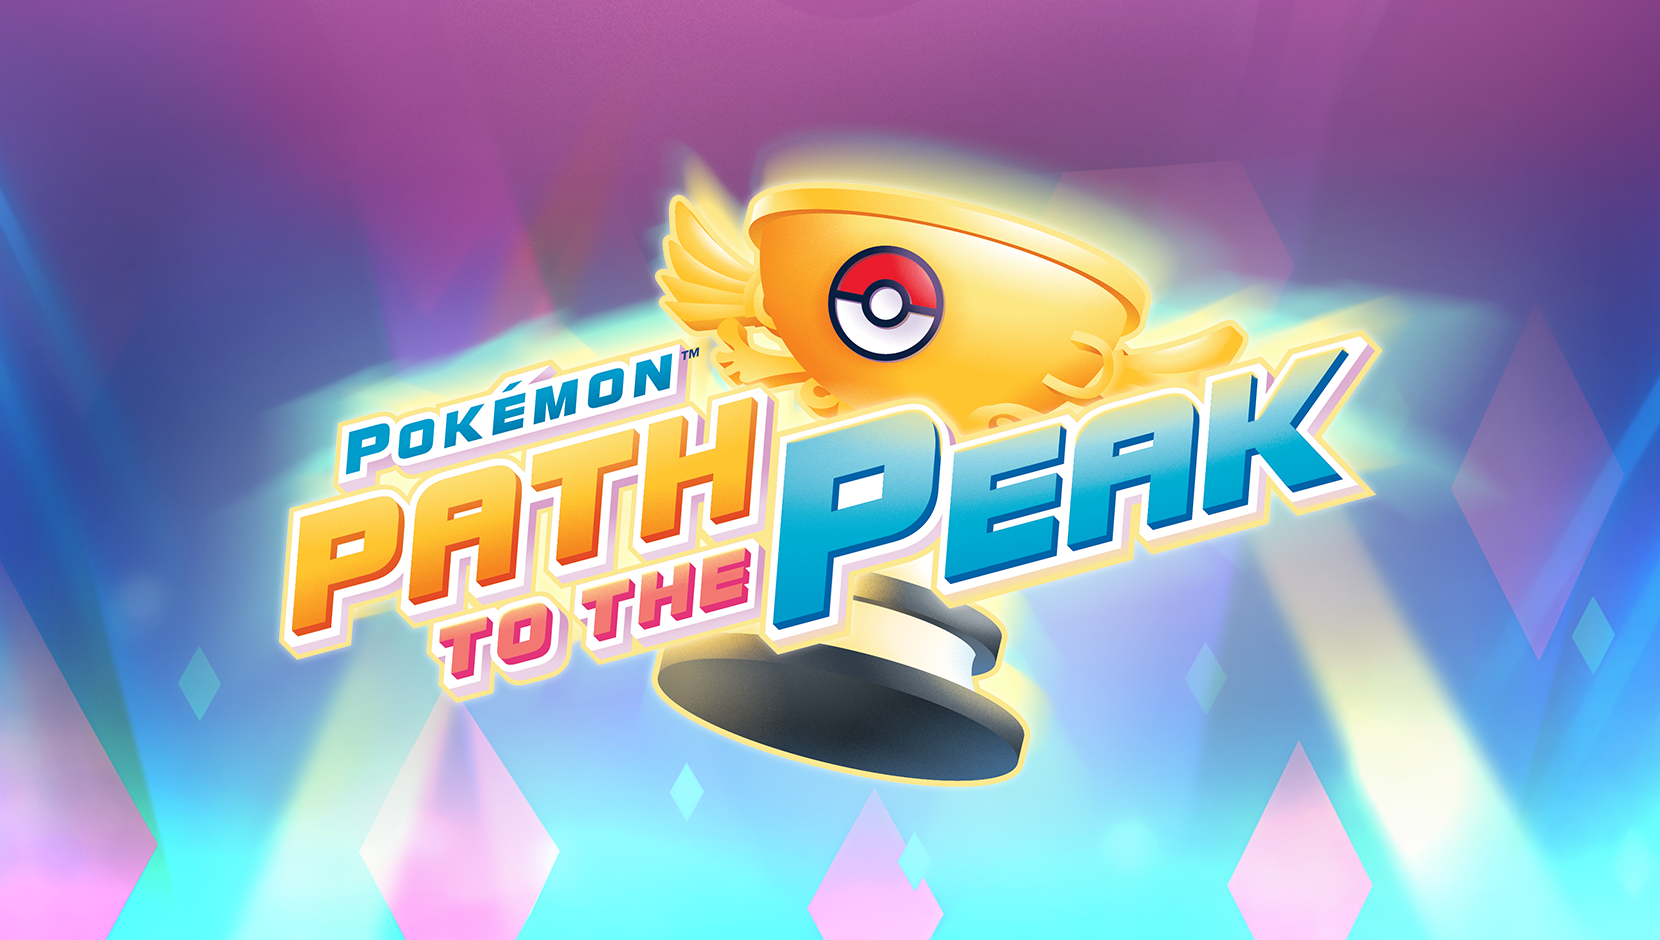 Pokémon TV adding Season 7 of the Pokémon anime on July 1st, 2022